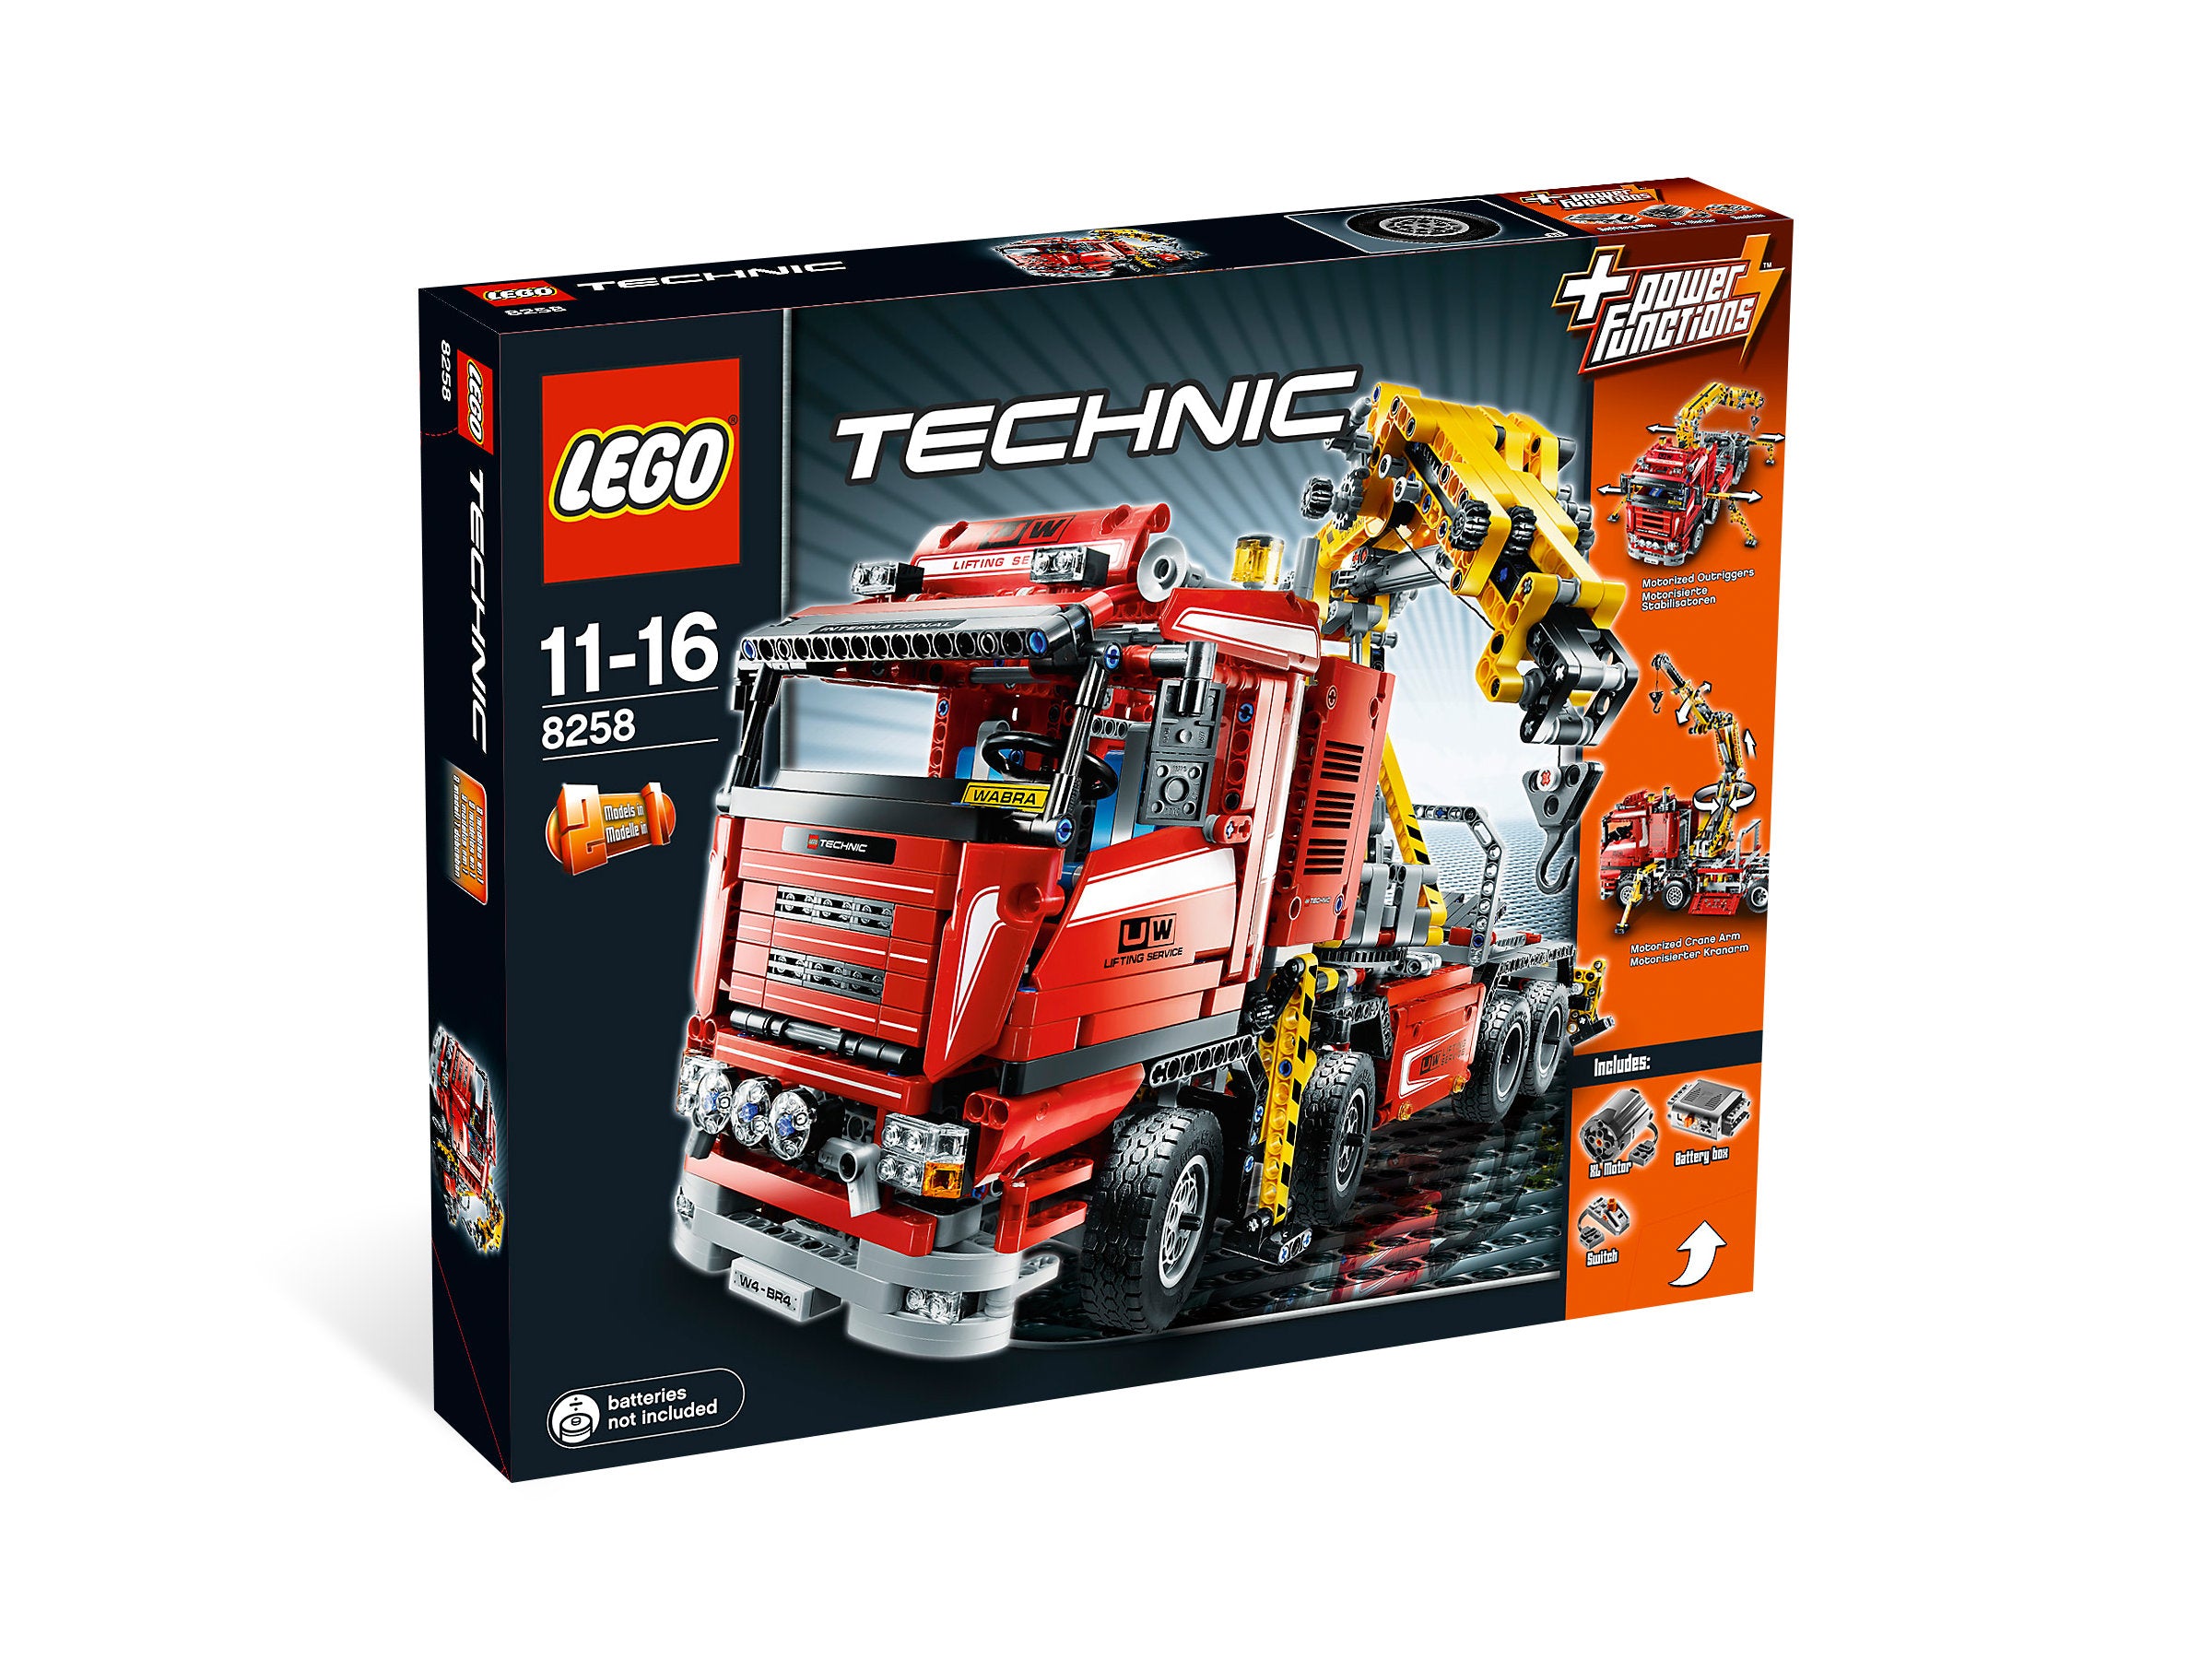 LEGO Technic Truck mit Power Schwenkkran (8258) - im GOLDSTIEN.SHOP verfügbar mit Gratisversand ab Schweizer Lager! (5702014532441)